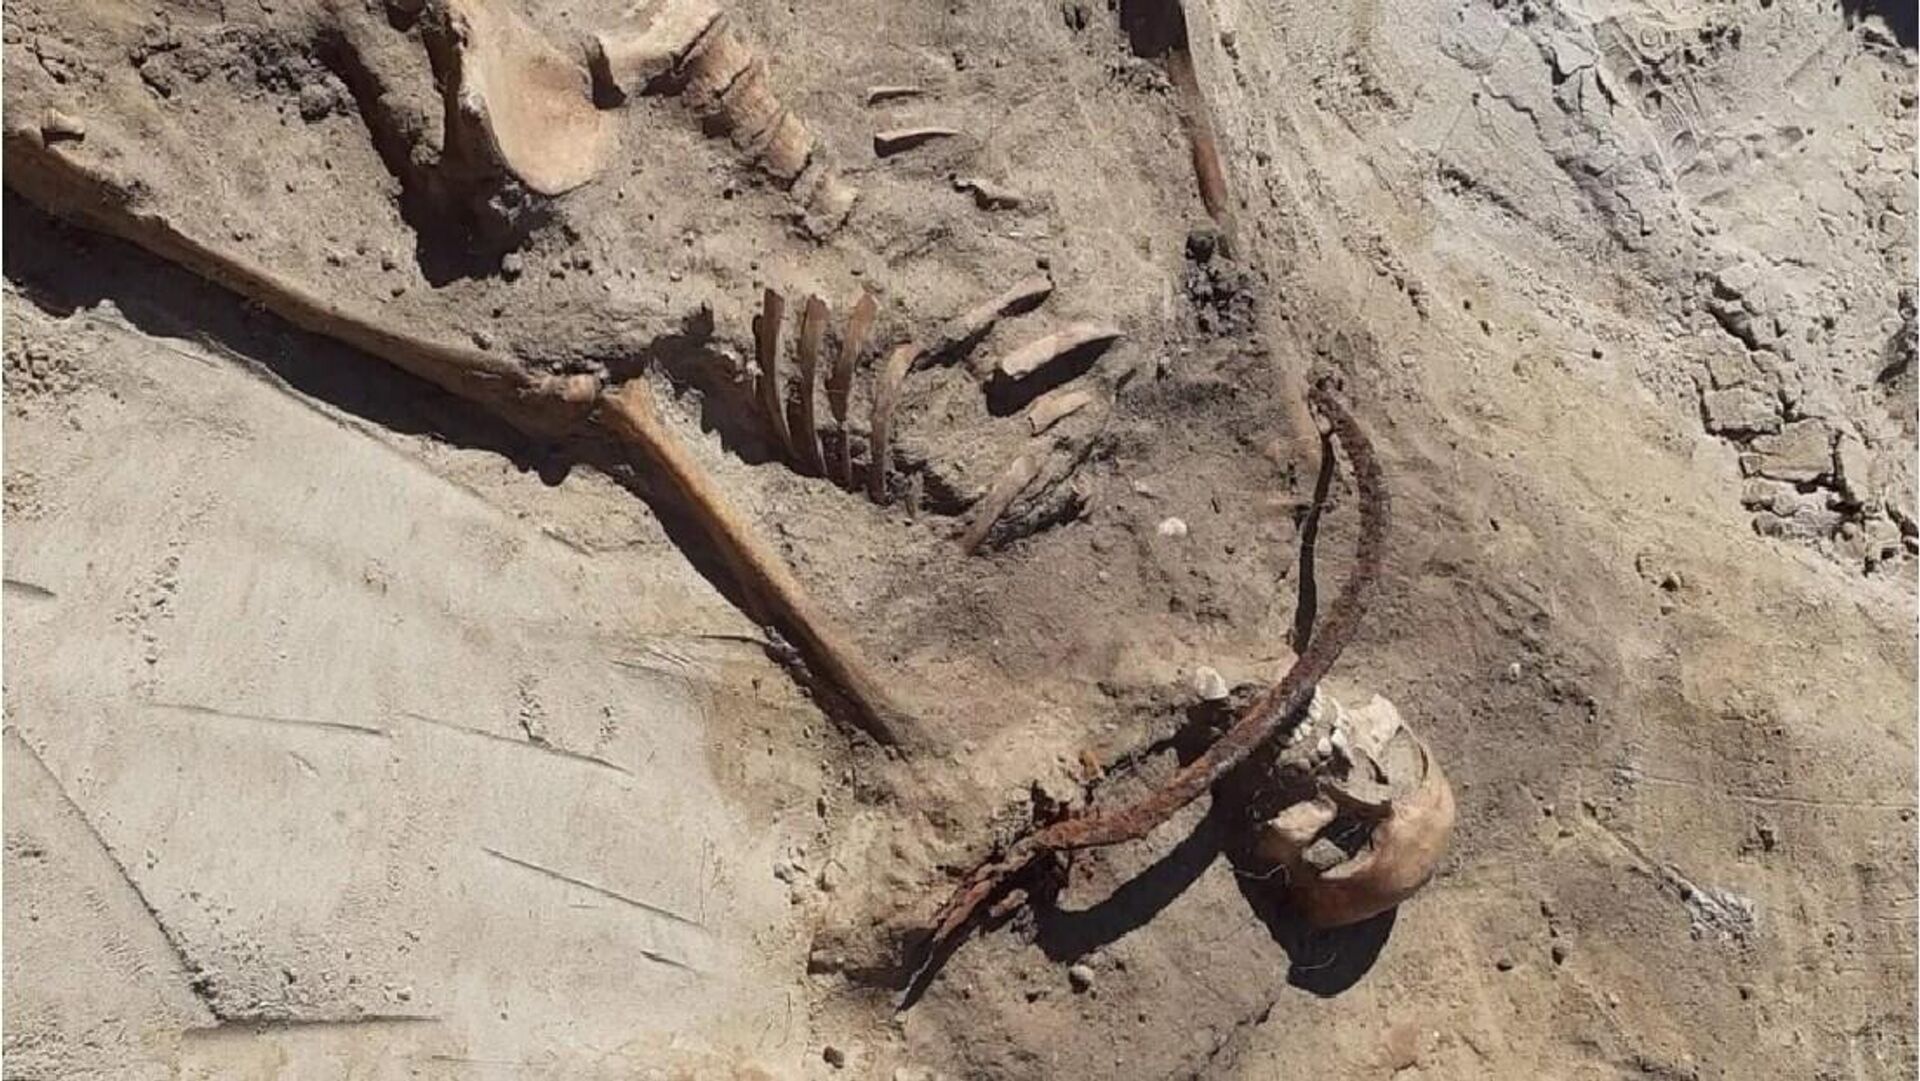 O esqueleto de uma mulher vampiro com uma foice no pescoço para que não se levantasse, bem como um cadeado no dedão do pé, foi encontrado na Polônia - Sputnik Brasil, 1920, 04.09.2022